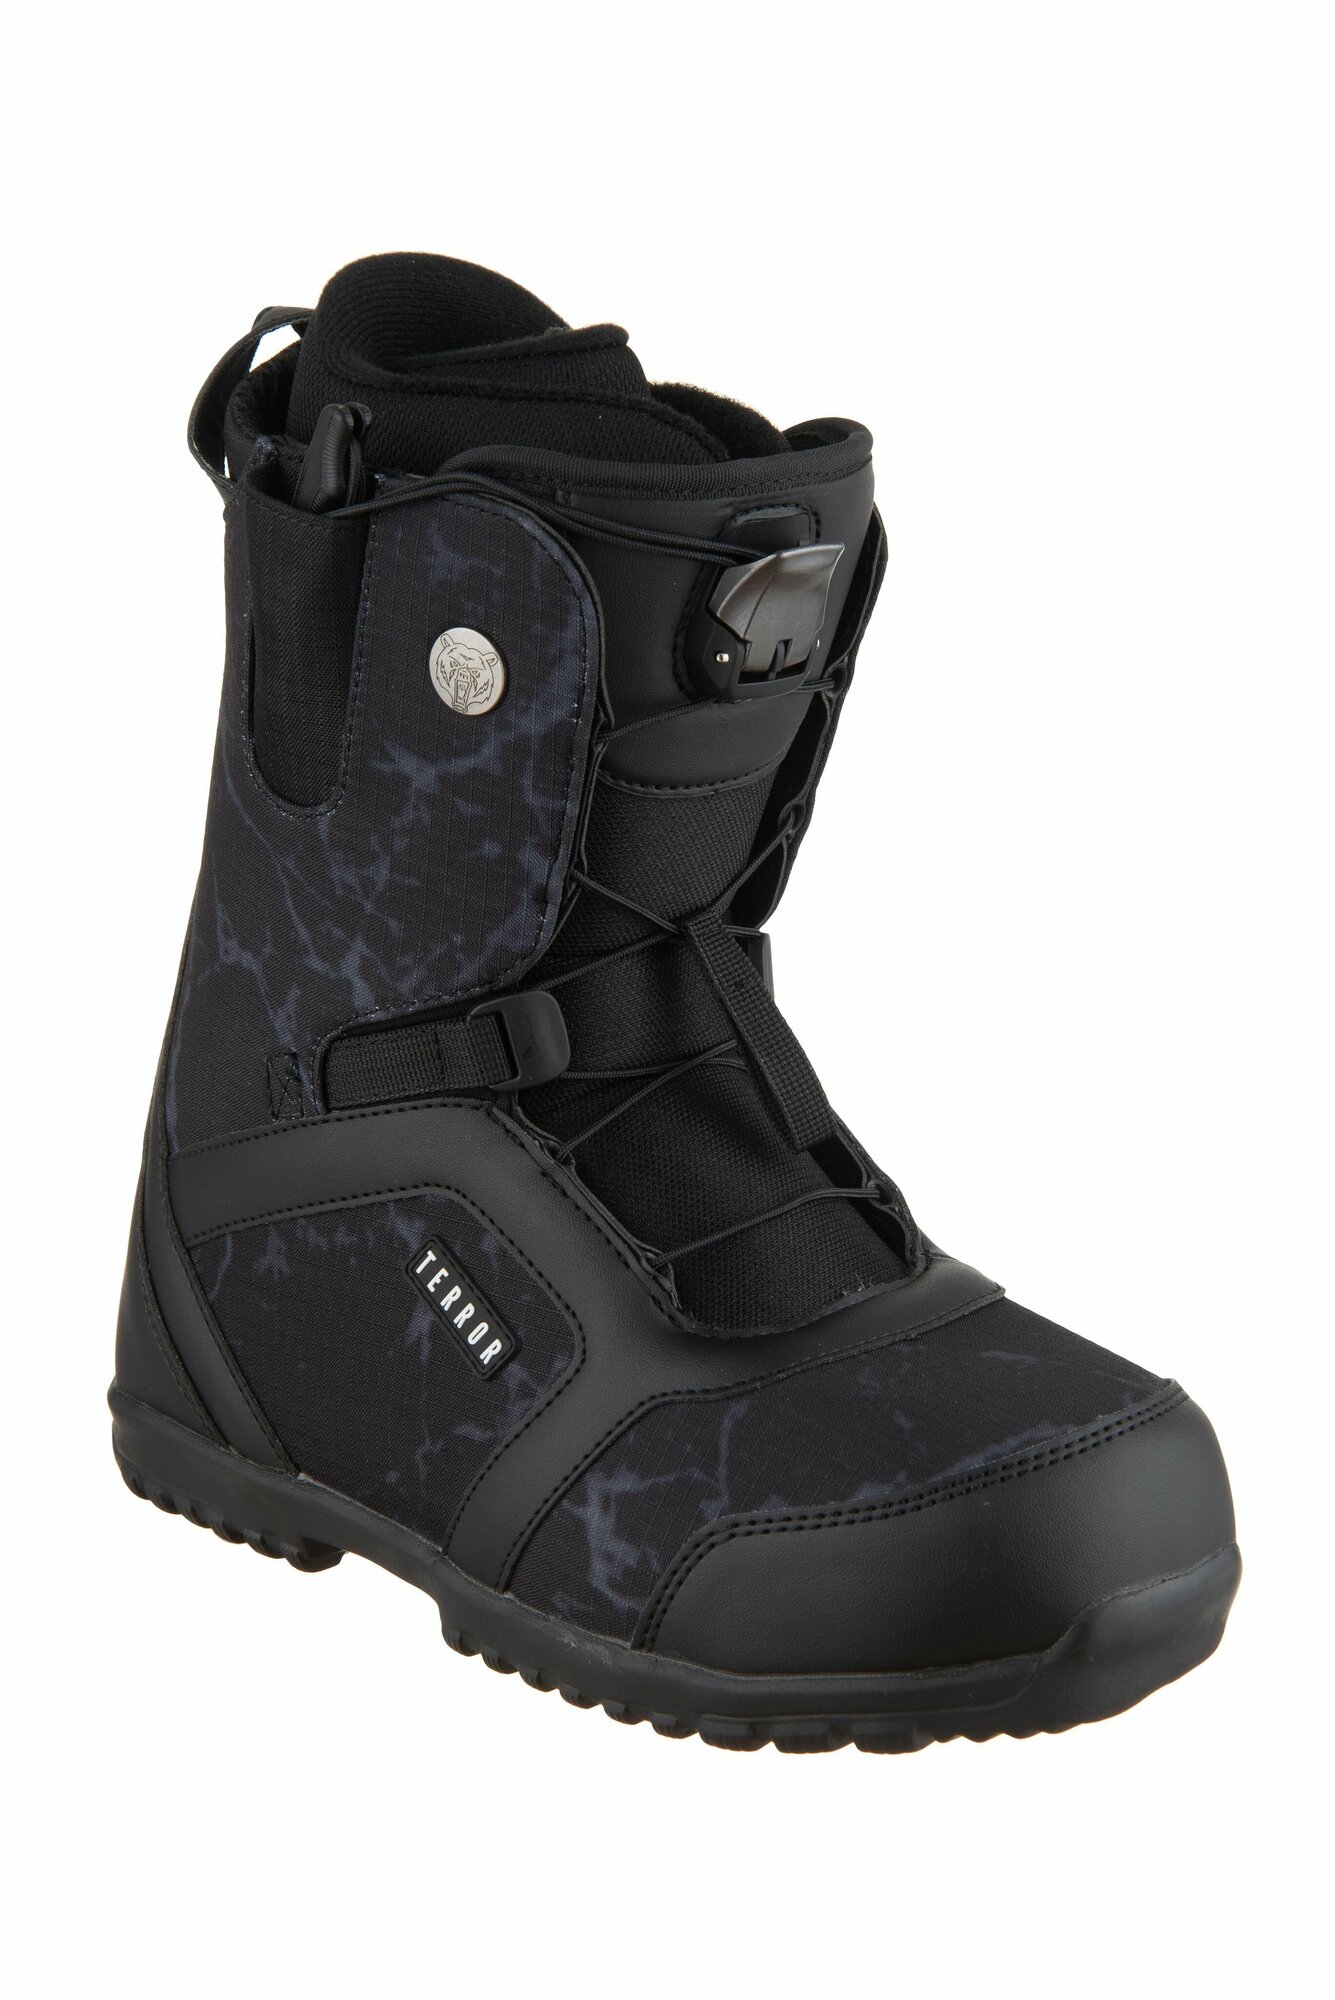 Ботинки сноубордические TERROR CREW Fastec Black (39 RU / 26 cm)